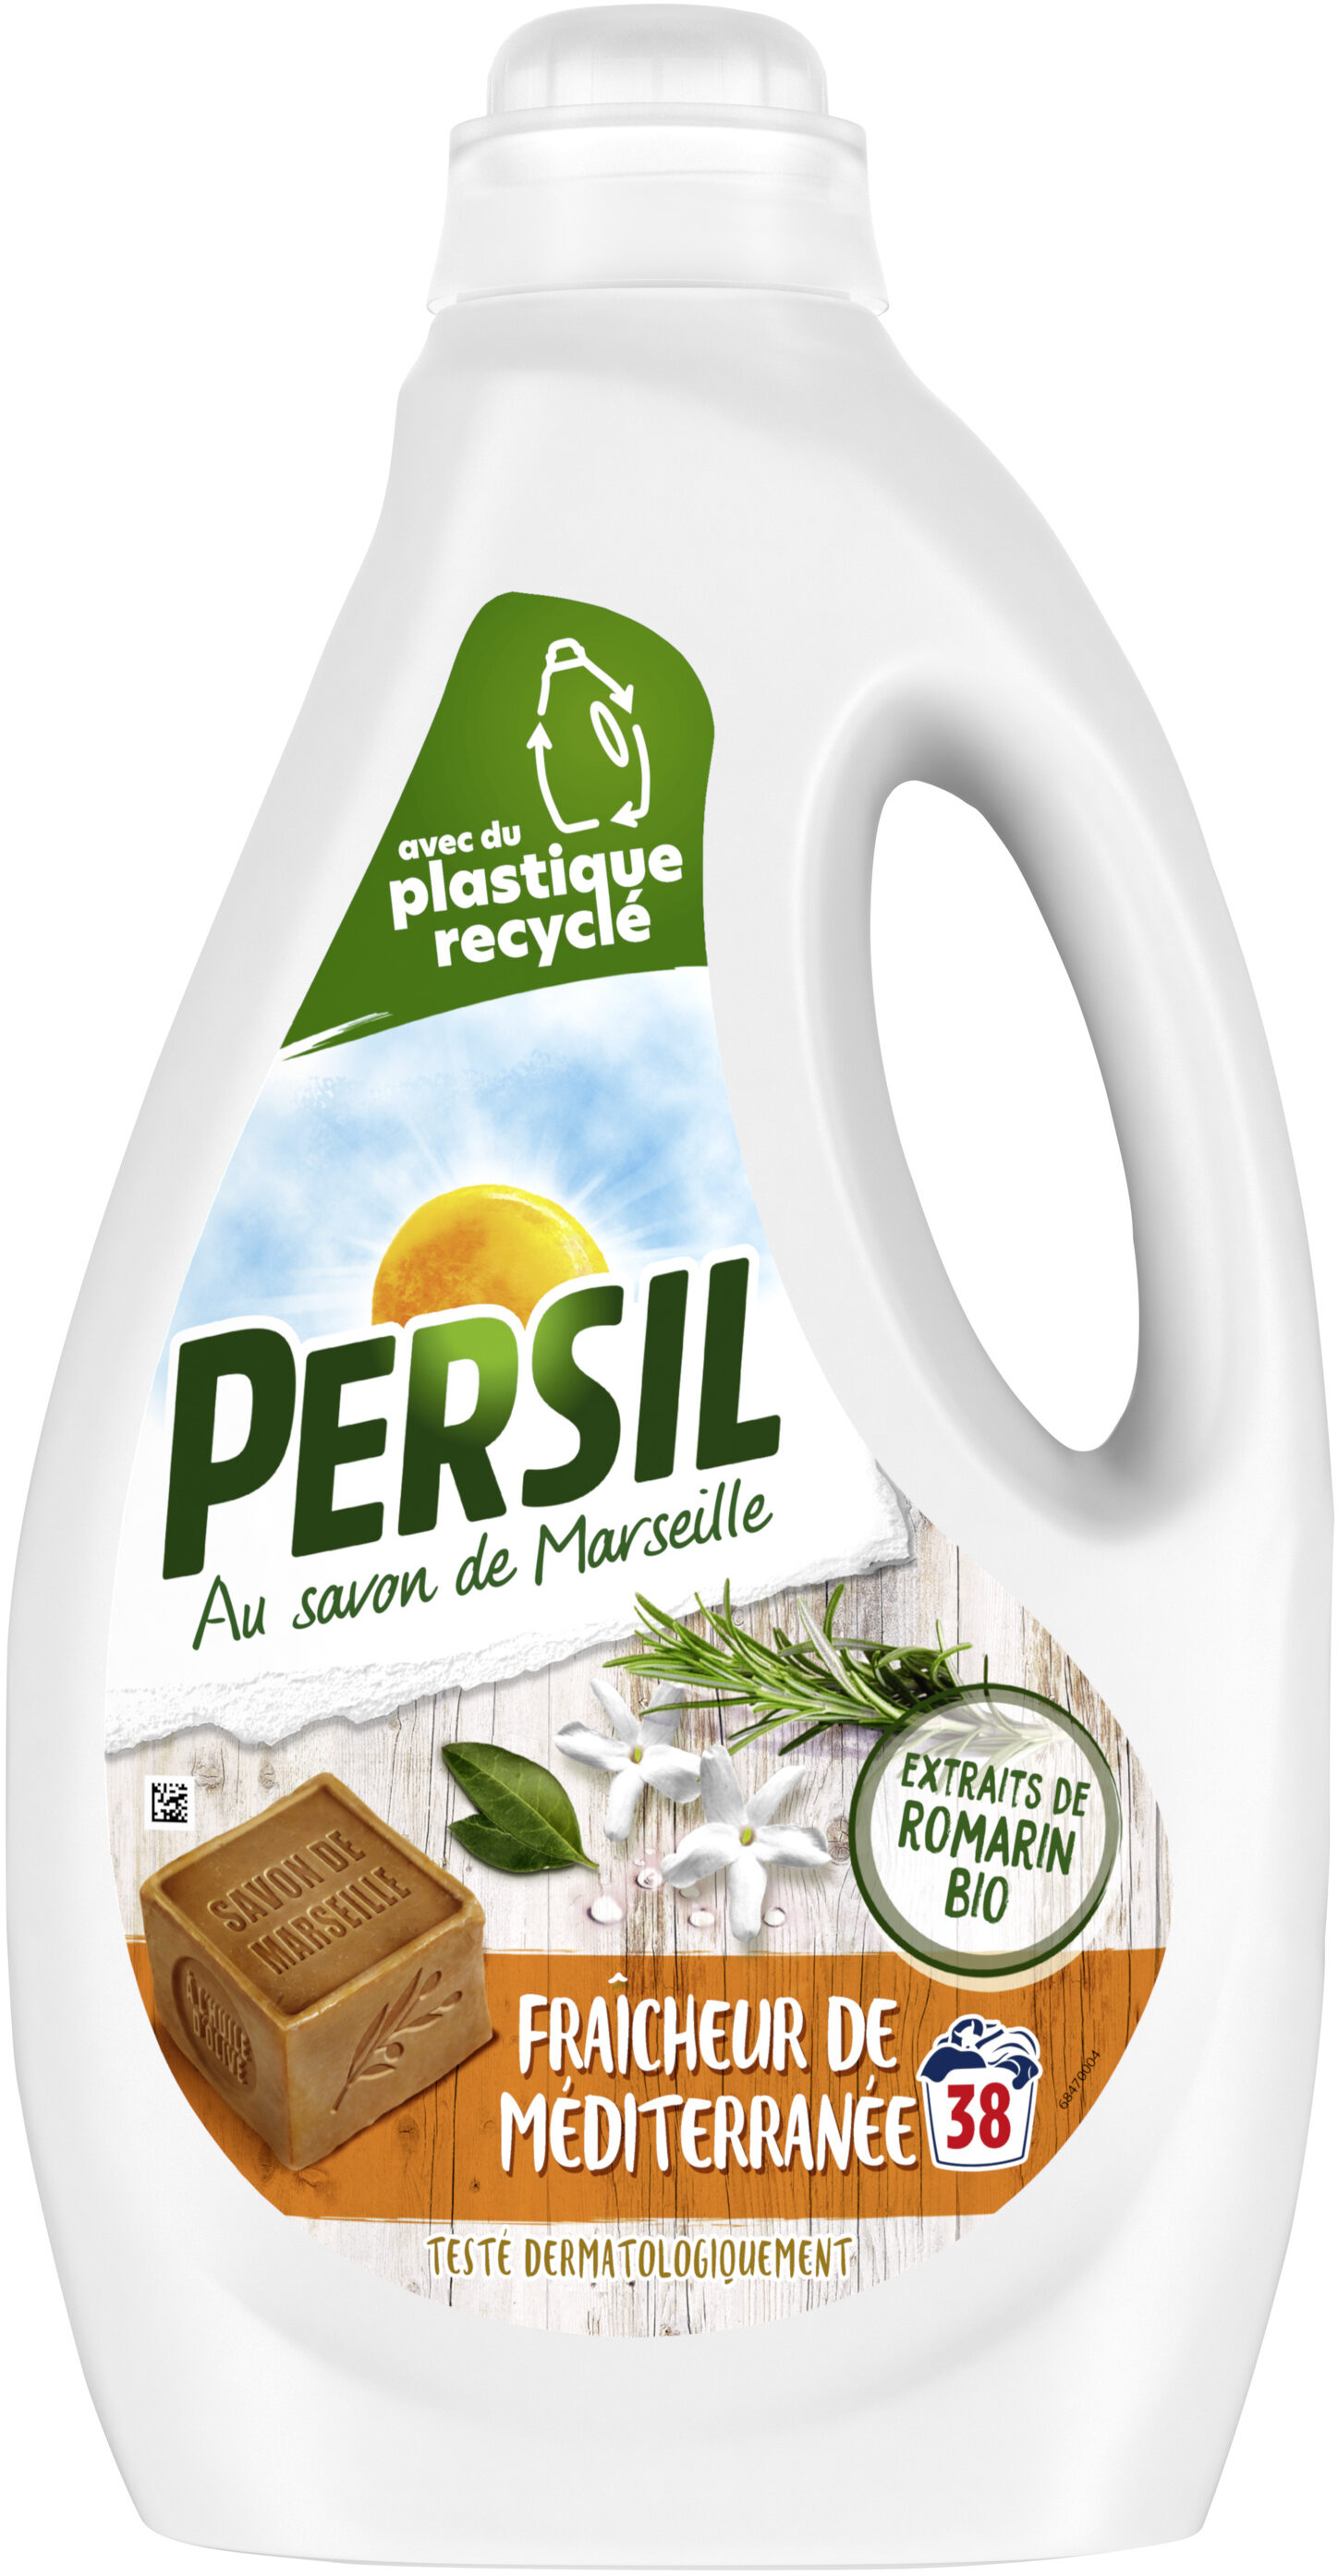 Persil Lessive Liquide Fraîcheur de Méditerranée aux extraits de Romarin Bio 1,9l 38 Lavages - Product - fr